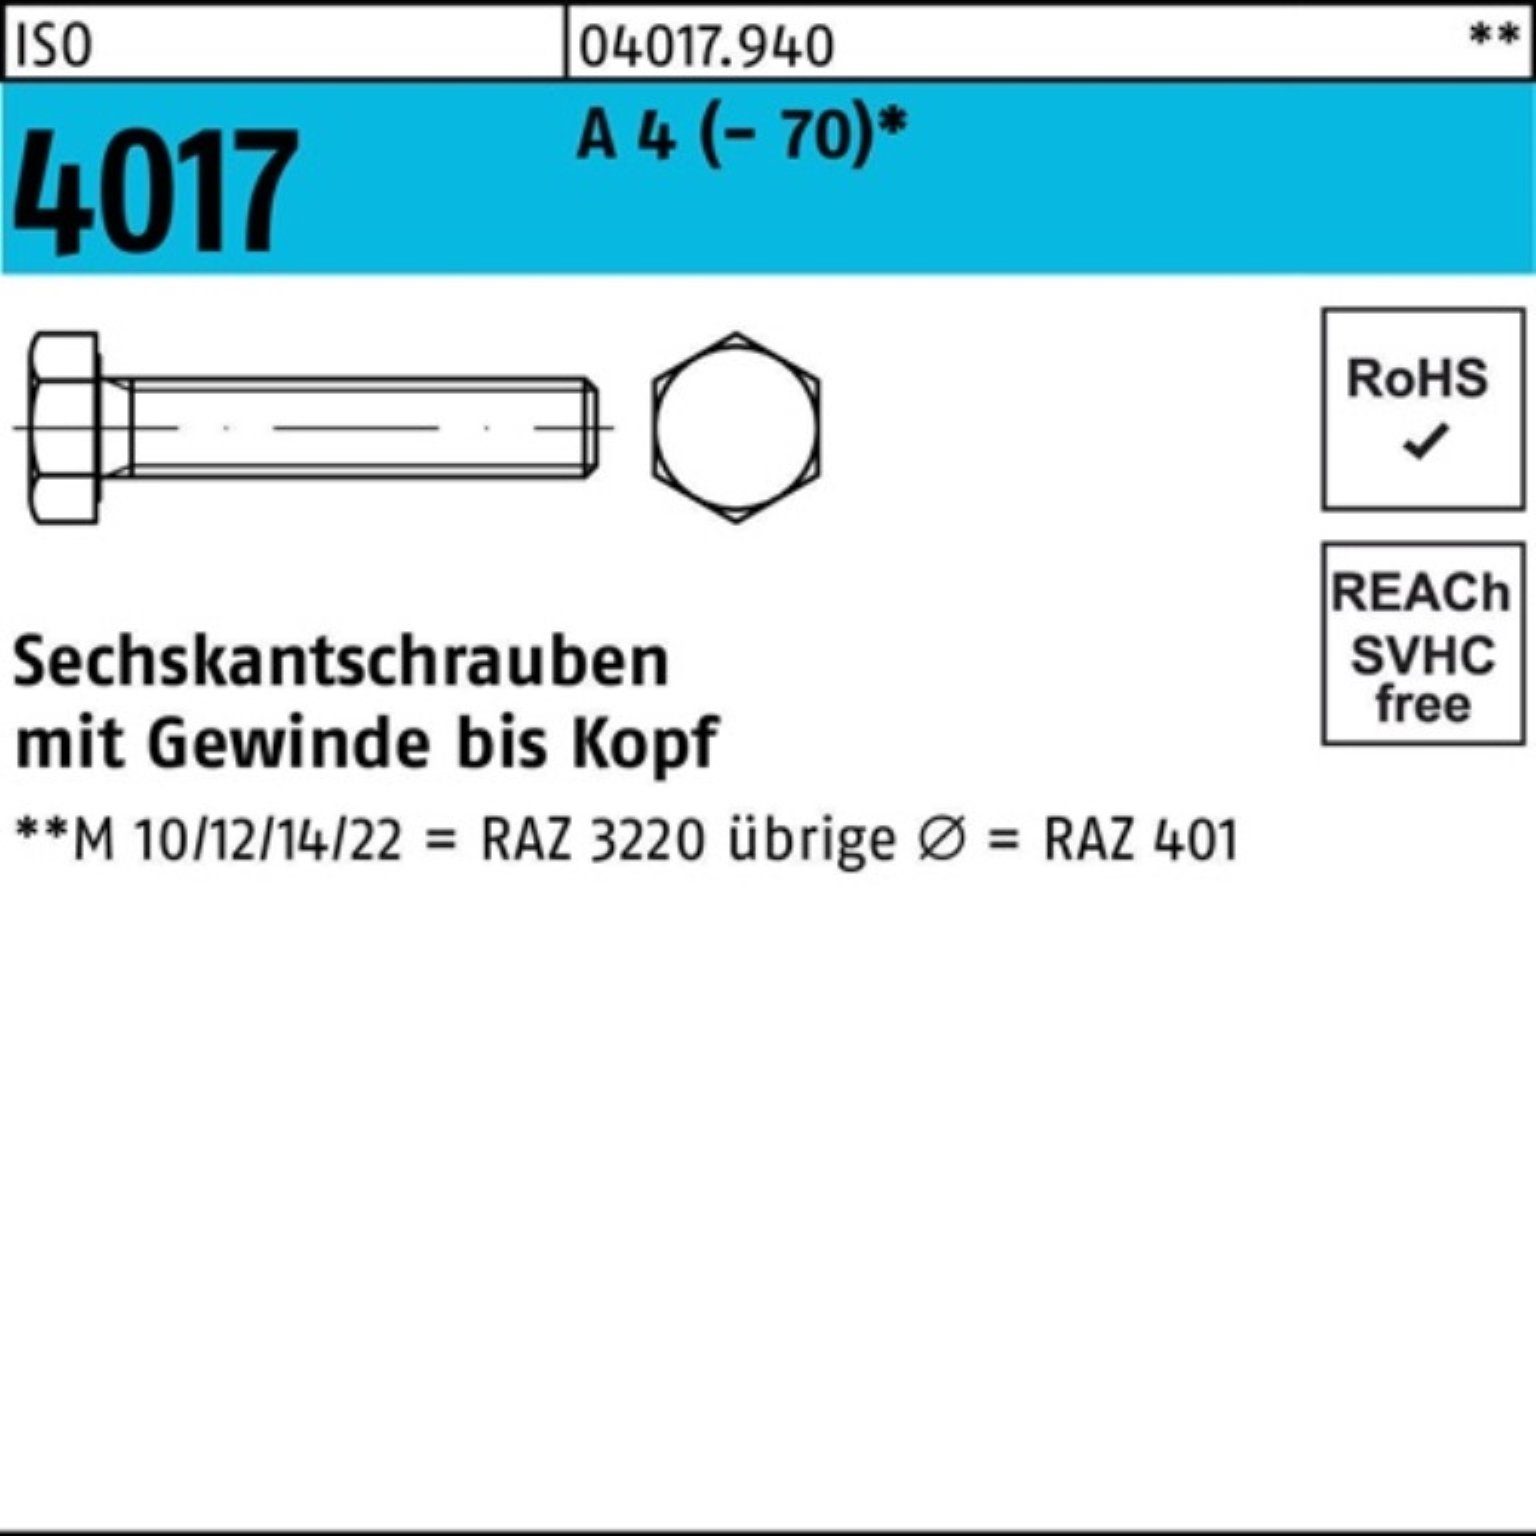 Bufab Sechskantschraube Pack A VG 1 4 4017 100er Sechskantschraube ISO 401 M36x ISO Stück 100